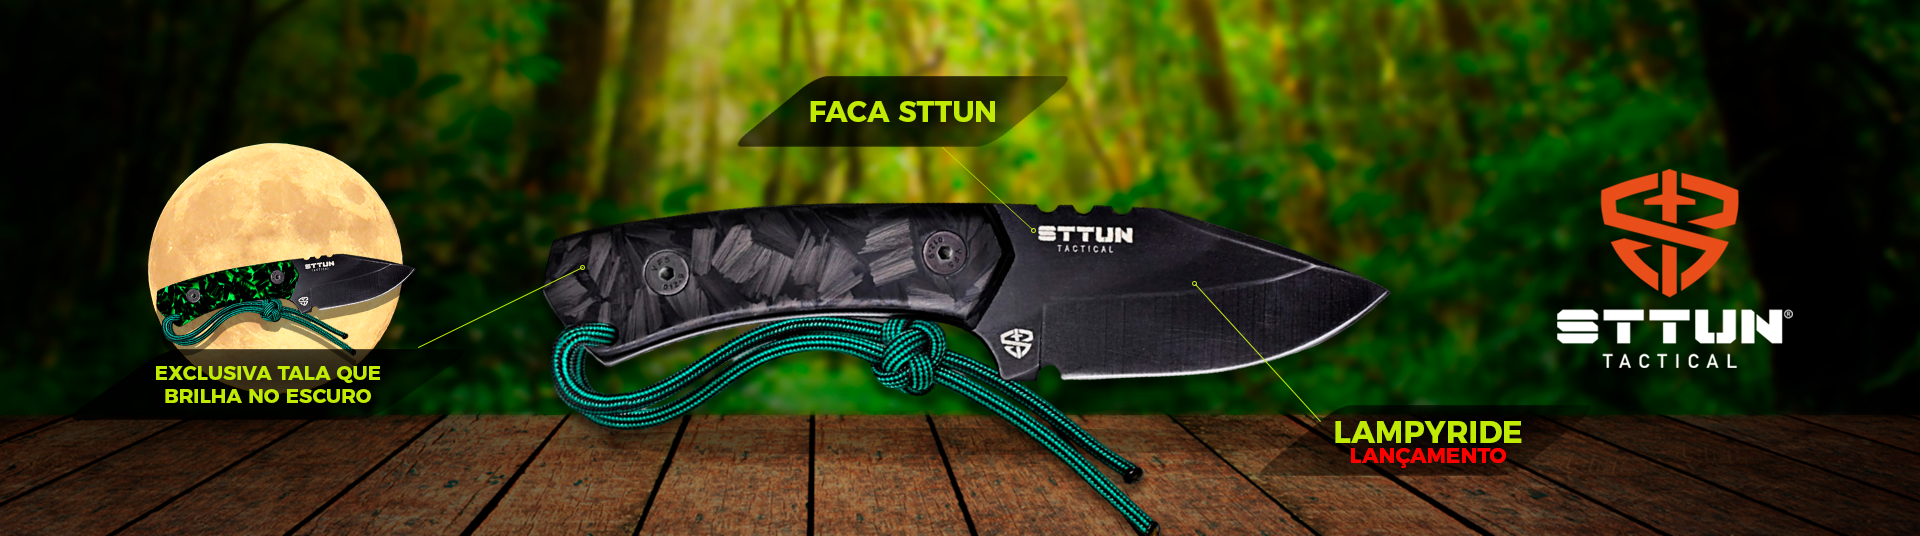 Sttun Tactical®: a empresa que revolucionou o mercado de equipamentos  táticos com o Sttun Stick